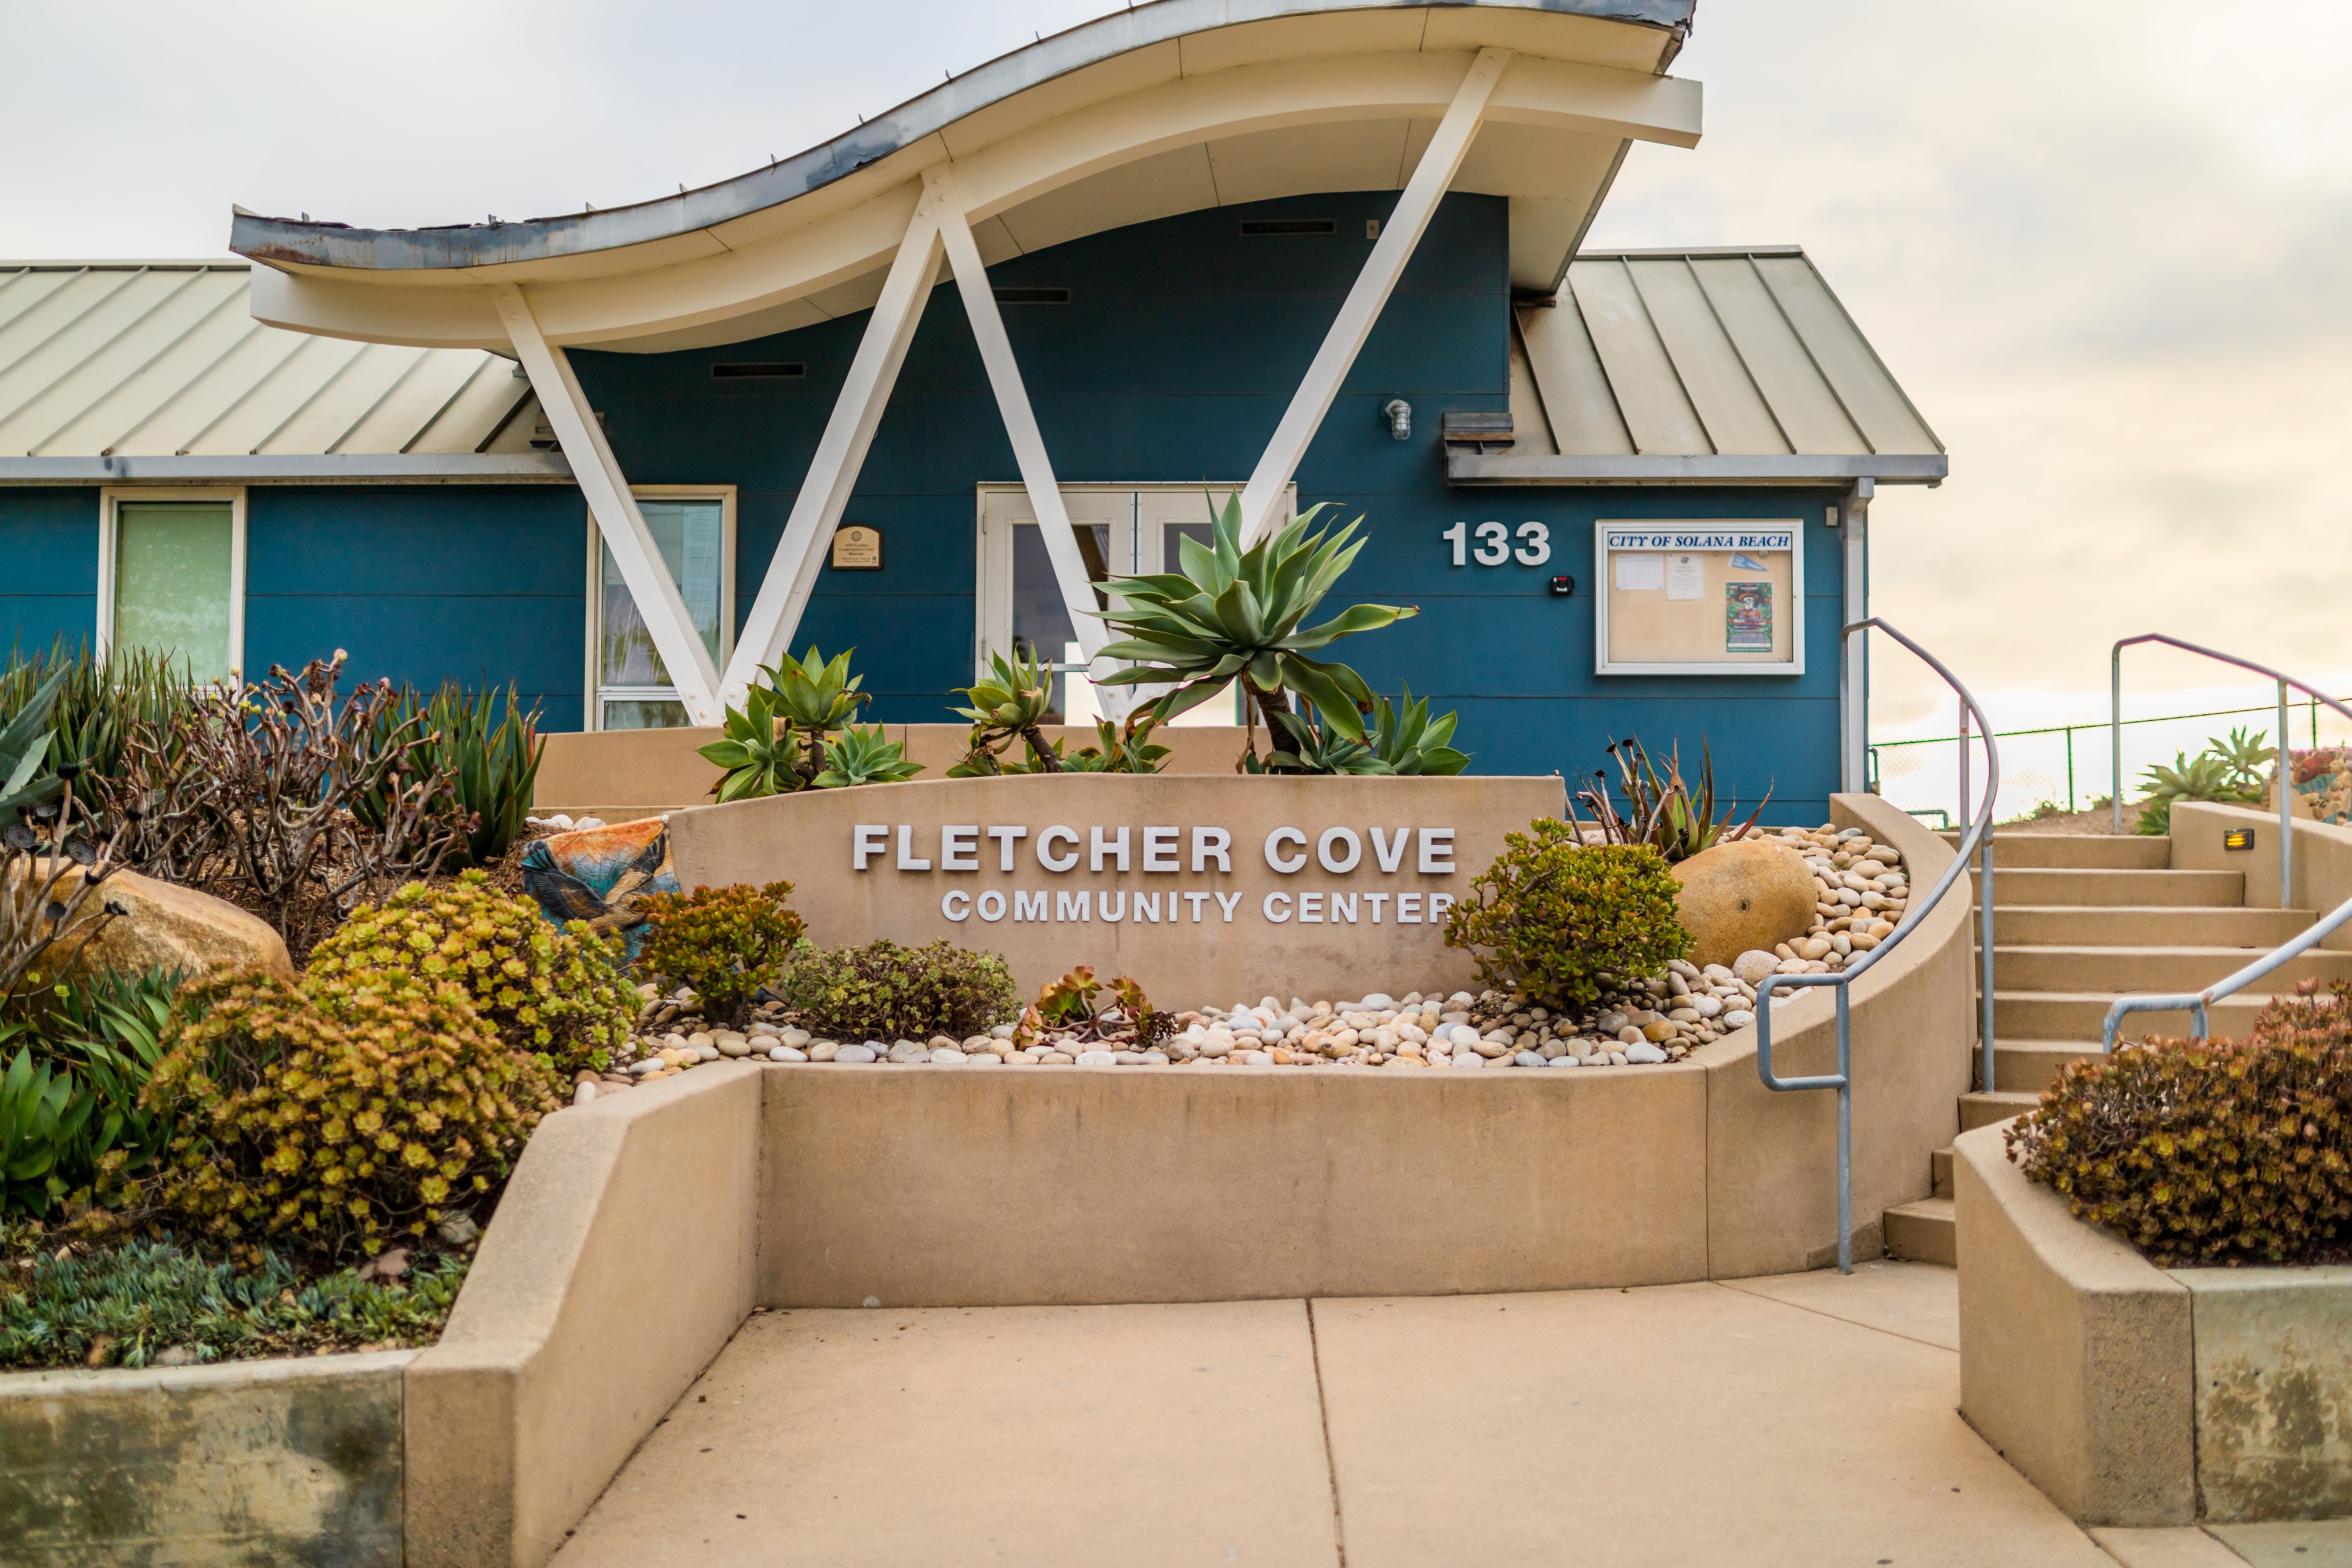 Fletcher Cove Community Center Temporary Closure